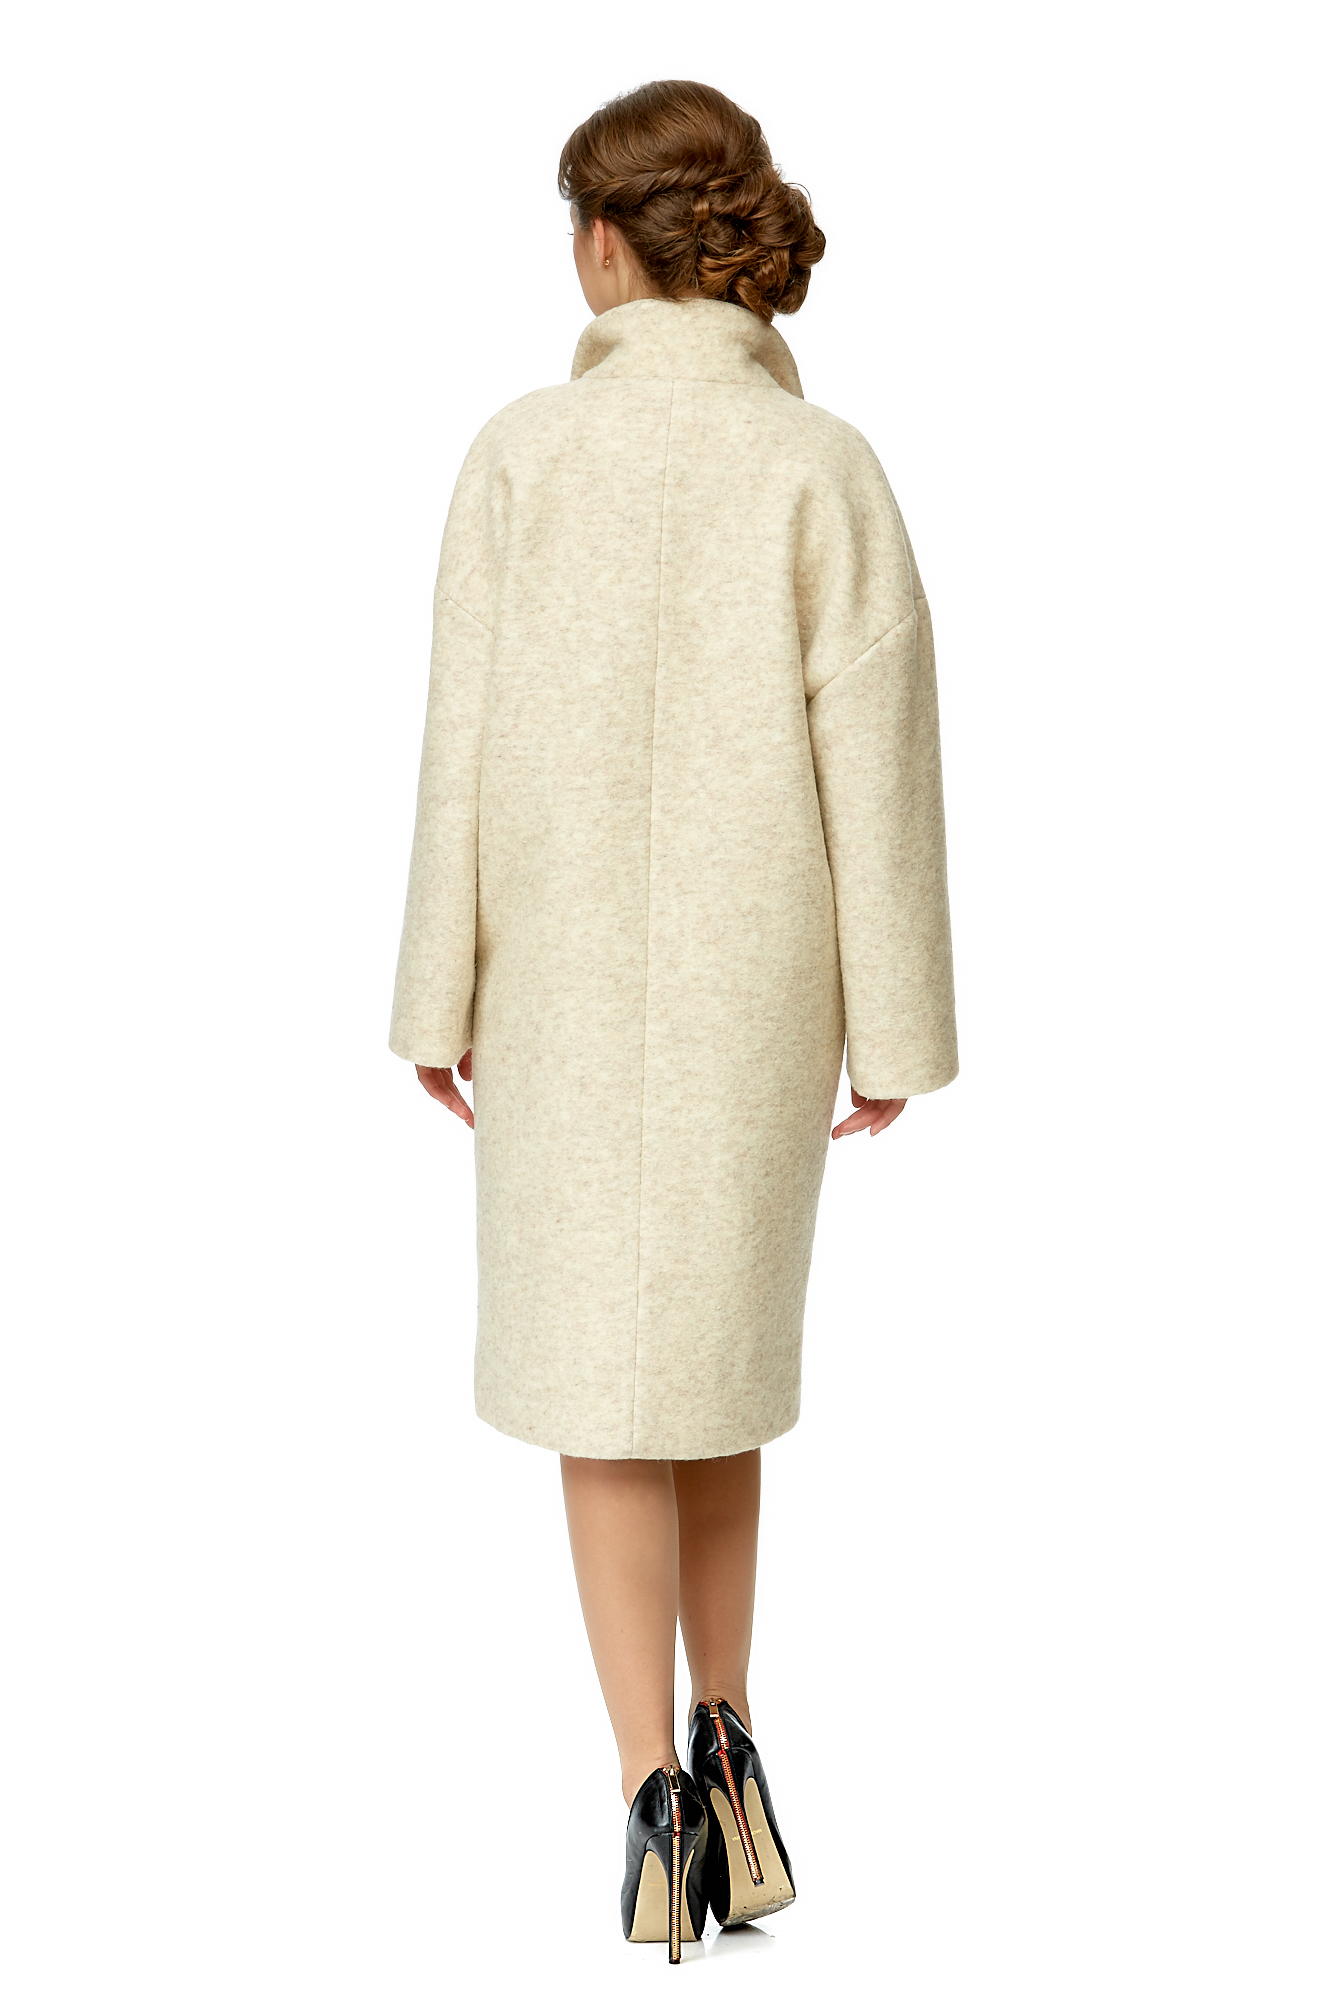 Женское пальто из текстиля с воротником 8001980-3